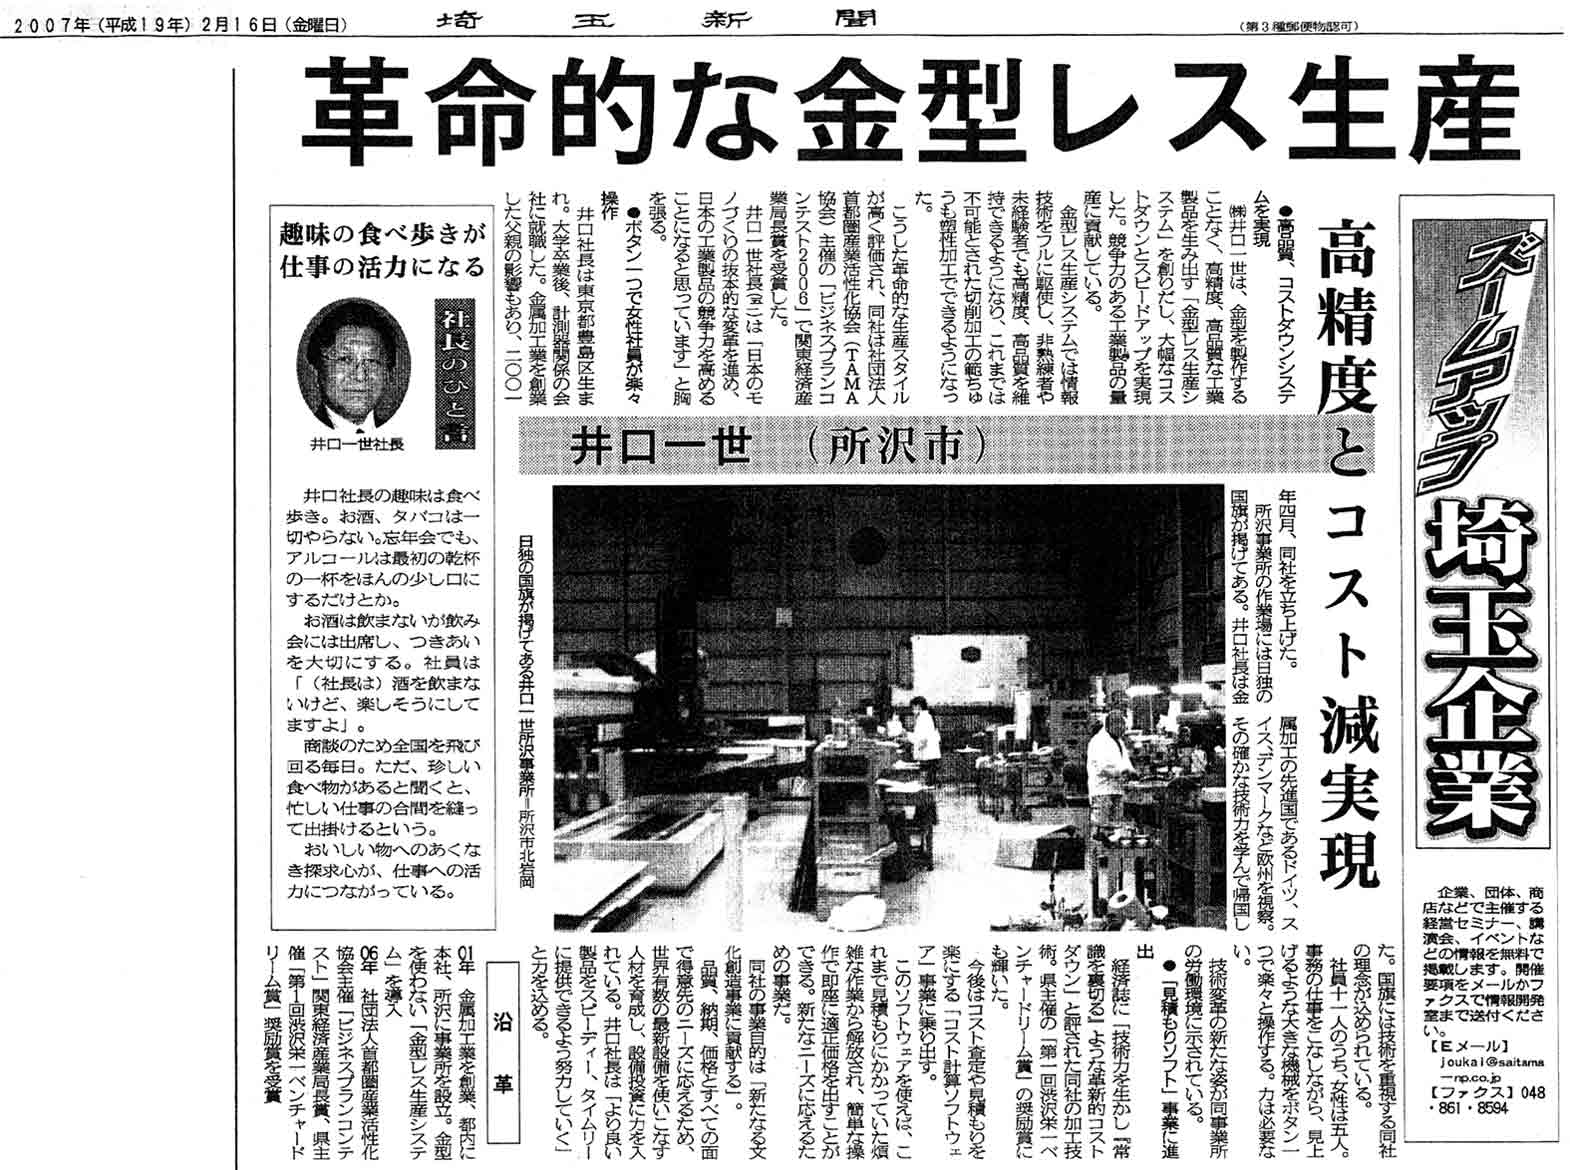 埼玉新聞2007年2月16日朝刊で、弊社が紹介されました